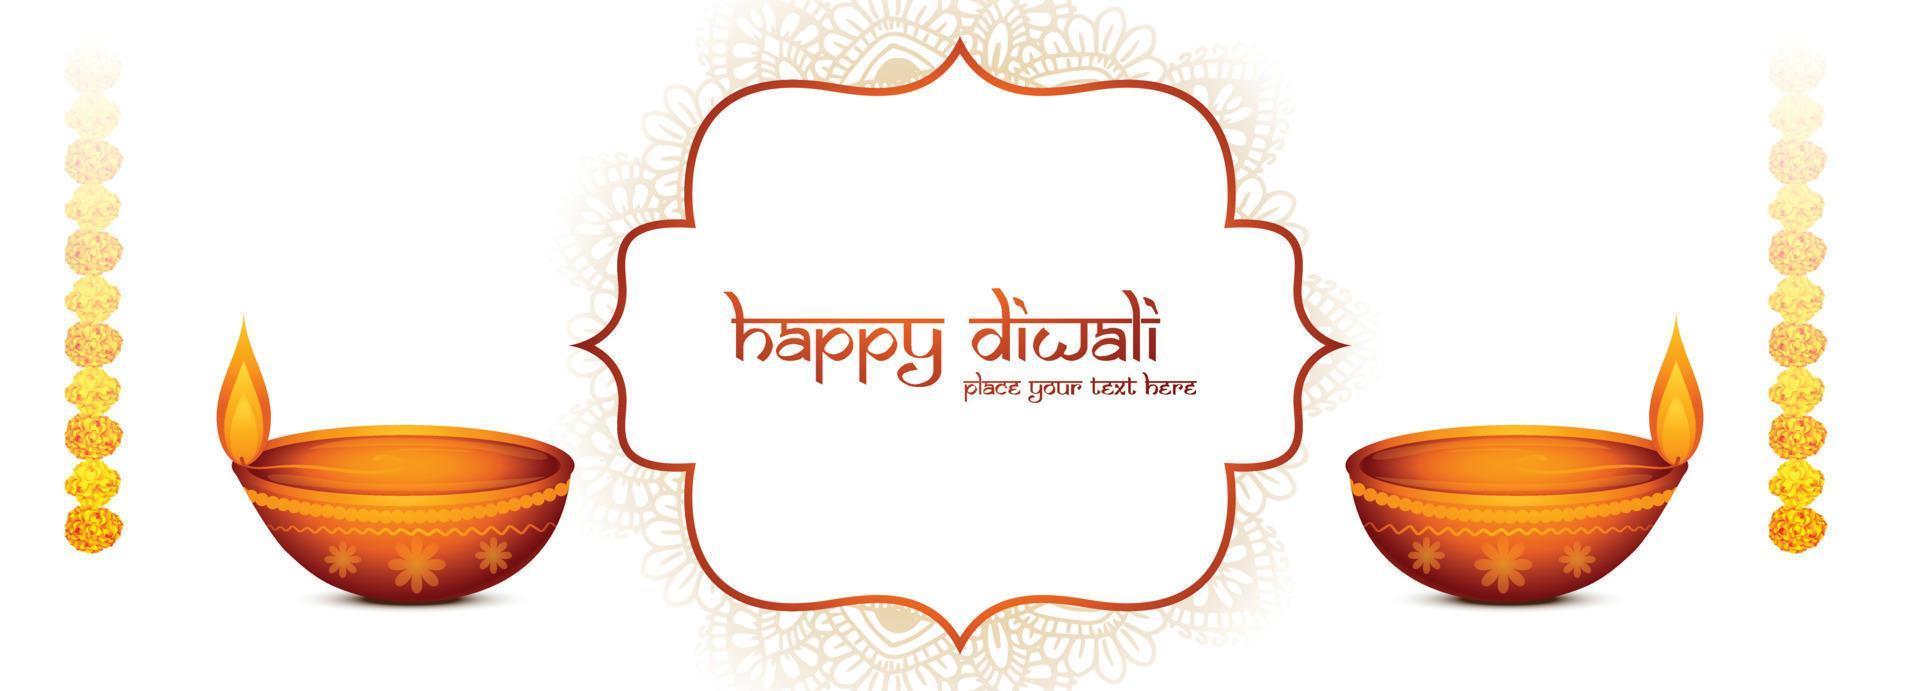 feliz diwali deseja banner com fundo de celebração de mandalas decorativas vetor